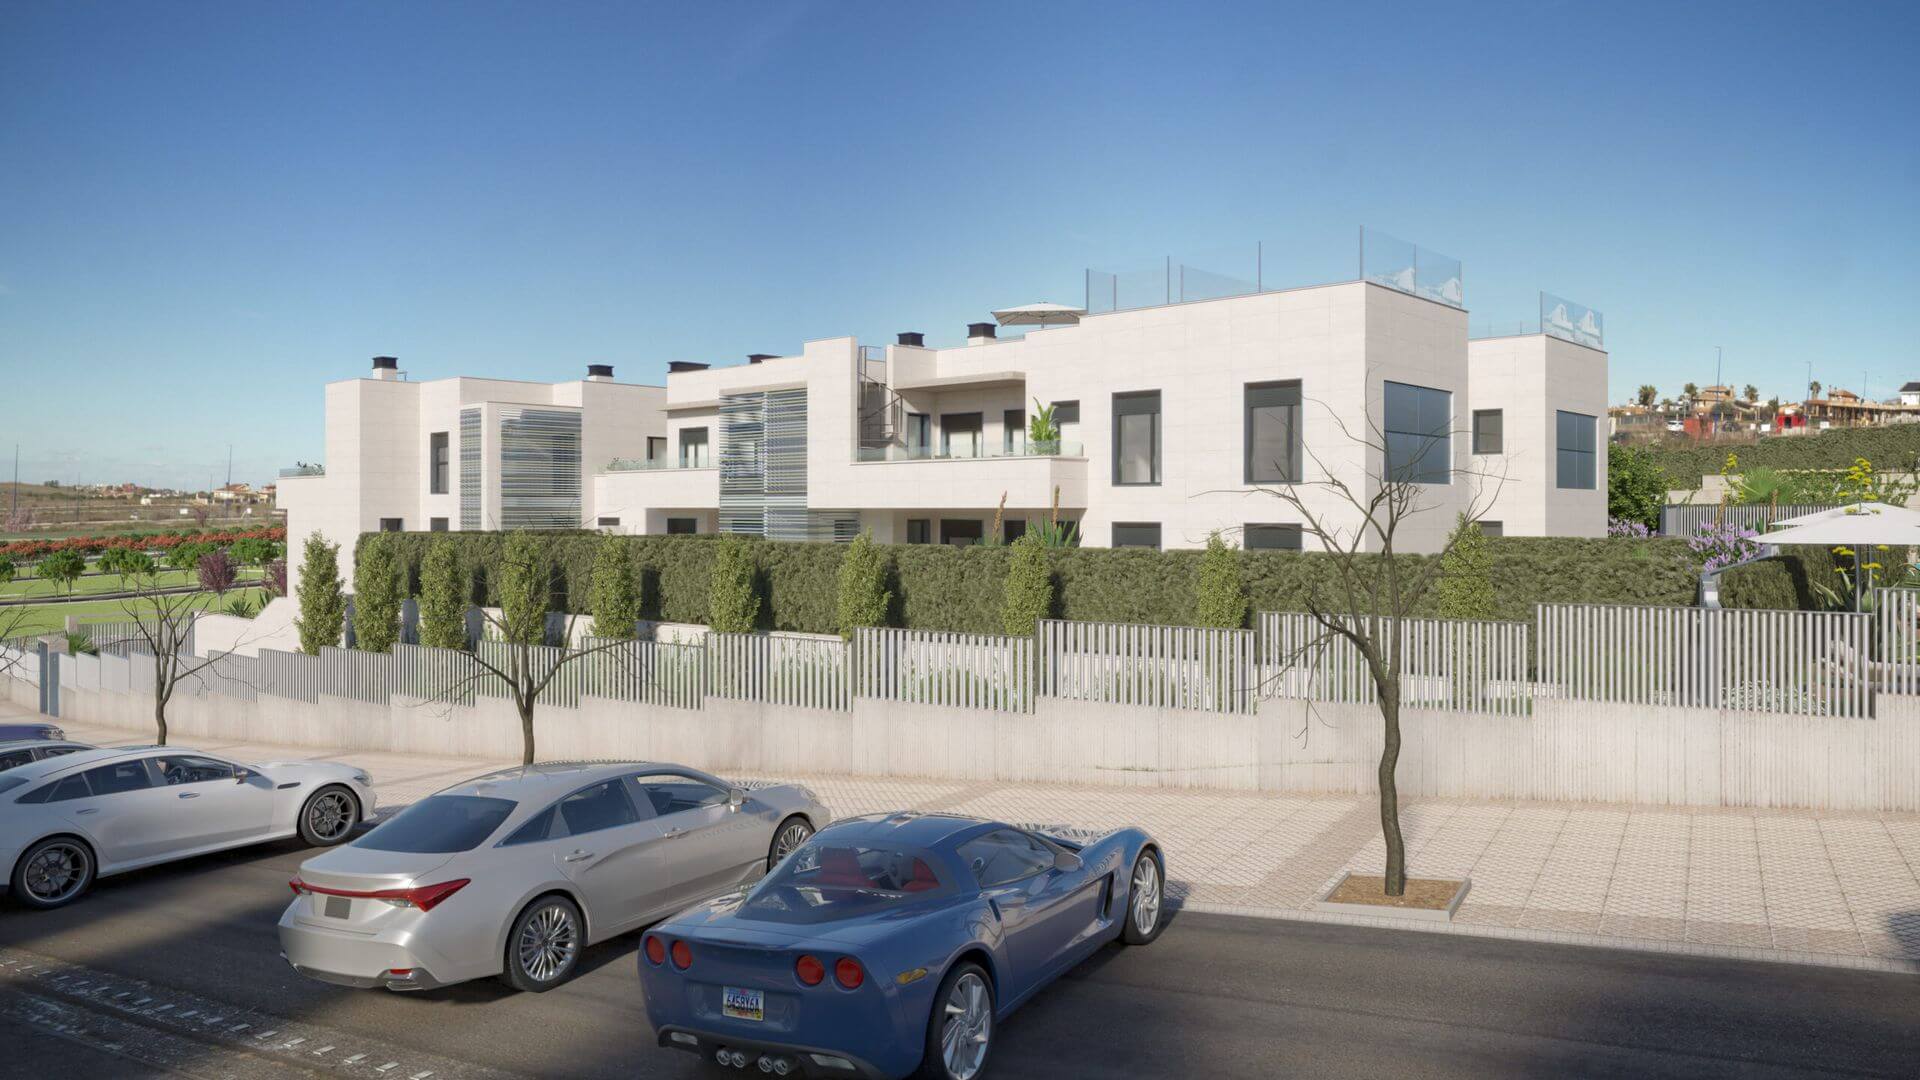 Nuevo proyecto residencial "El Valle" Las Vaguadas Badajoz